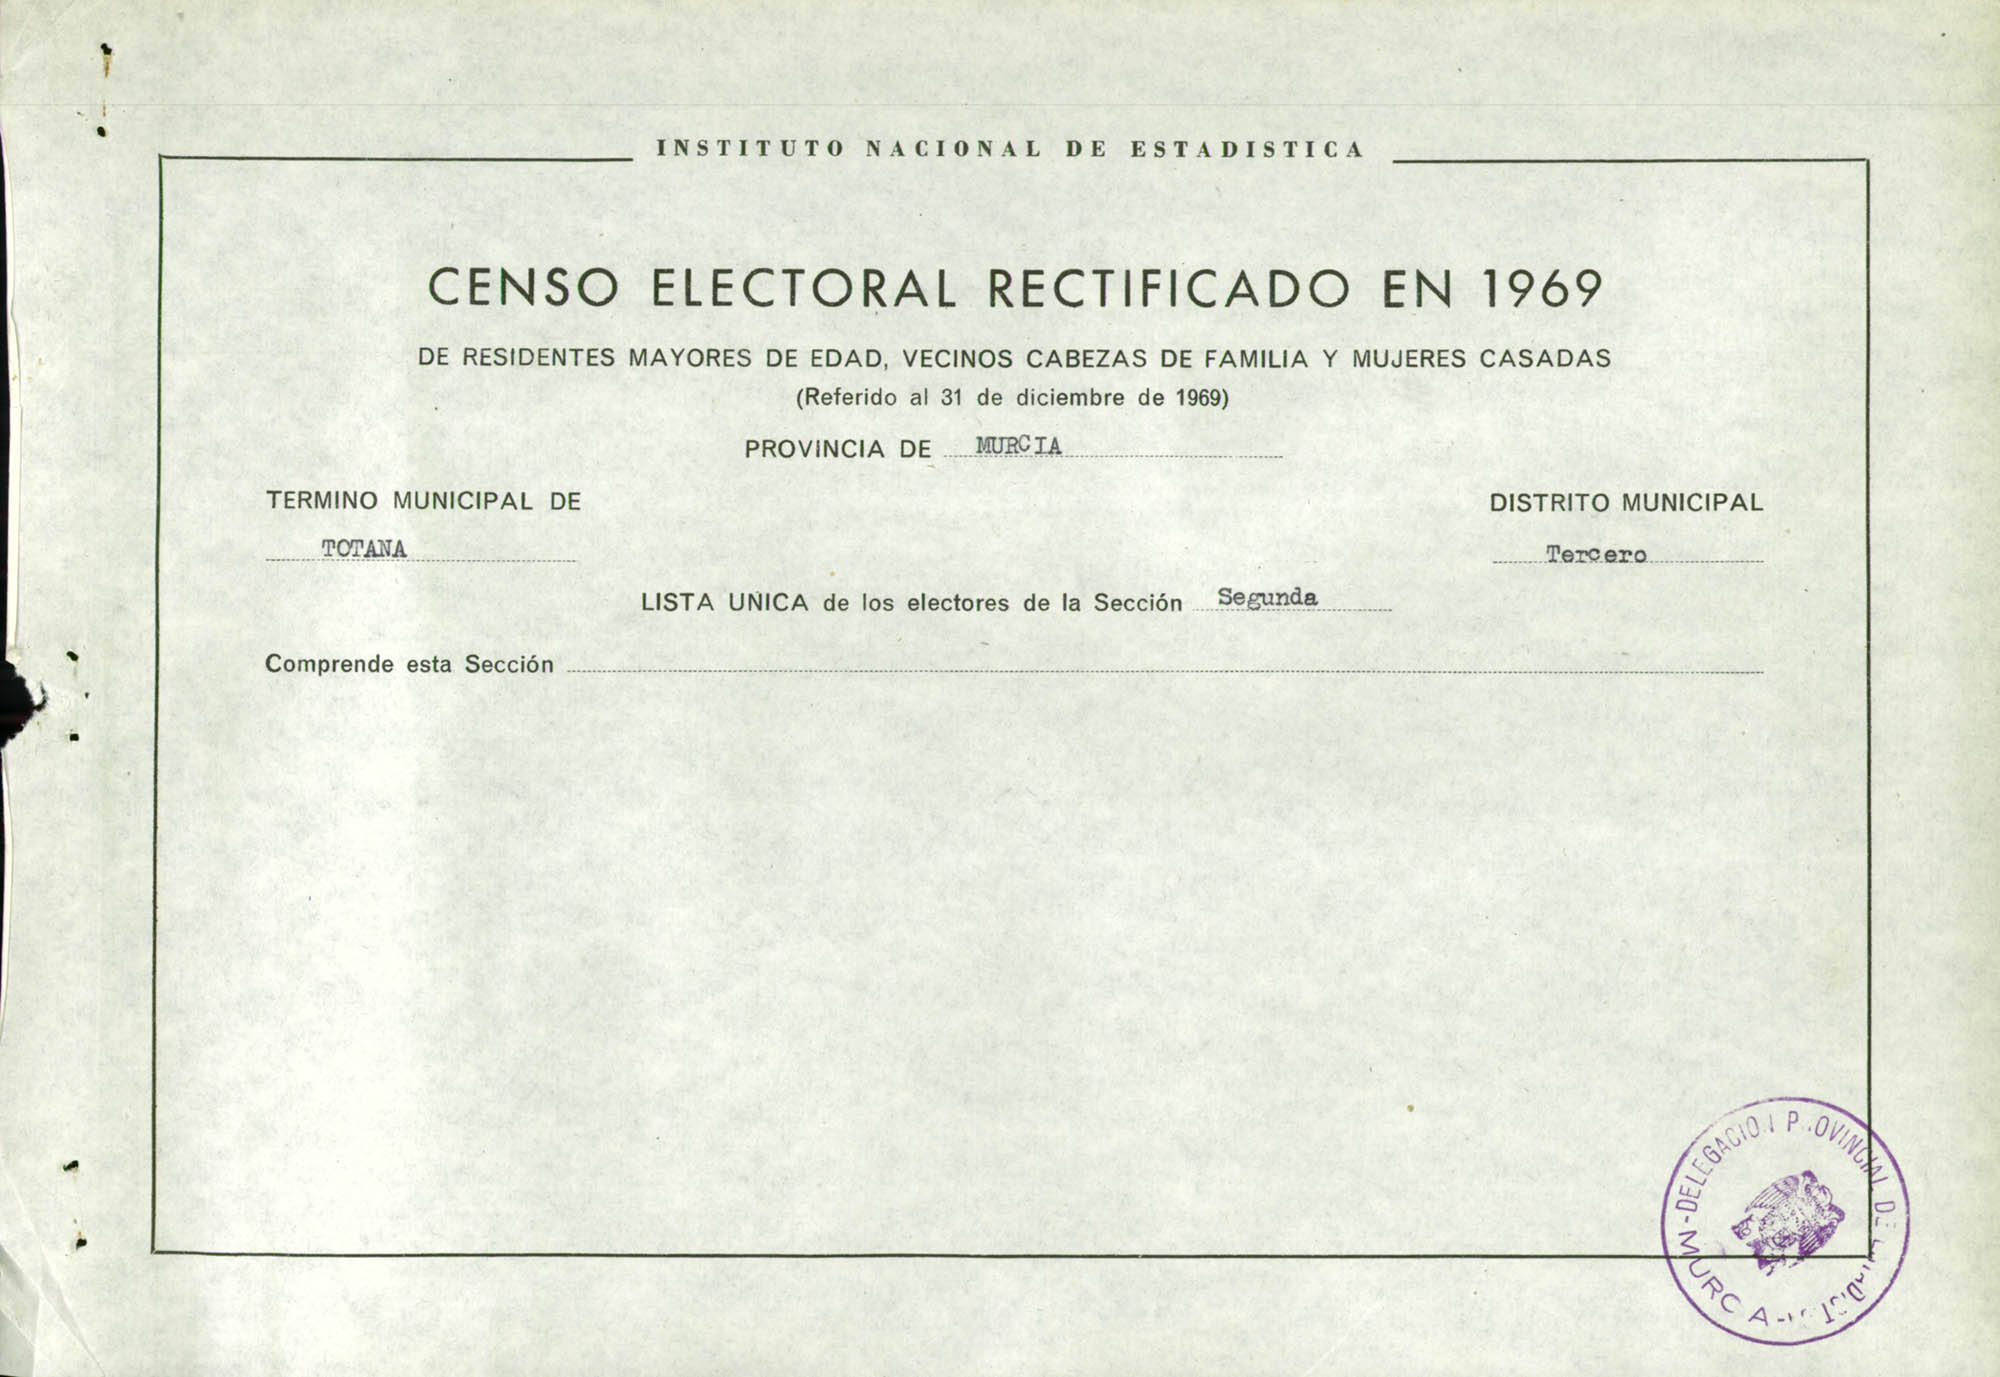 Censo electoral rectificado en 1969: listas definitivas de Totana, Distrito 3º, sección 2ª.